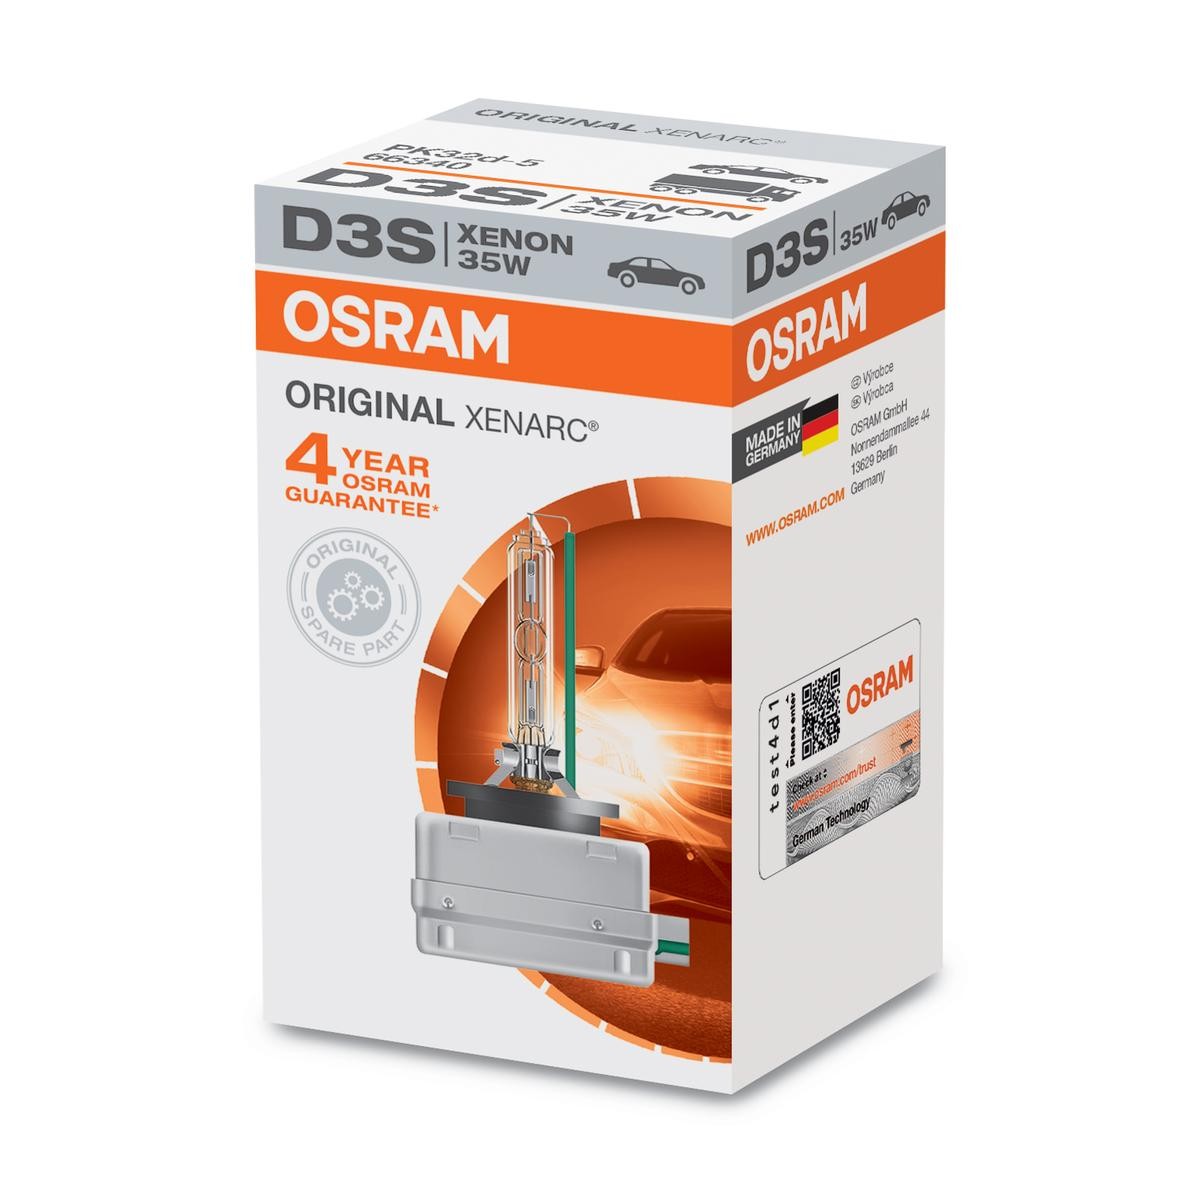 D3S OSRAM XENARC ORIGINAL D3S (Plynová výbojka) 42V 35W PK32d-5 4500K xenon Zarovka, dalkovy svetlomet 66340 kupte si levně